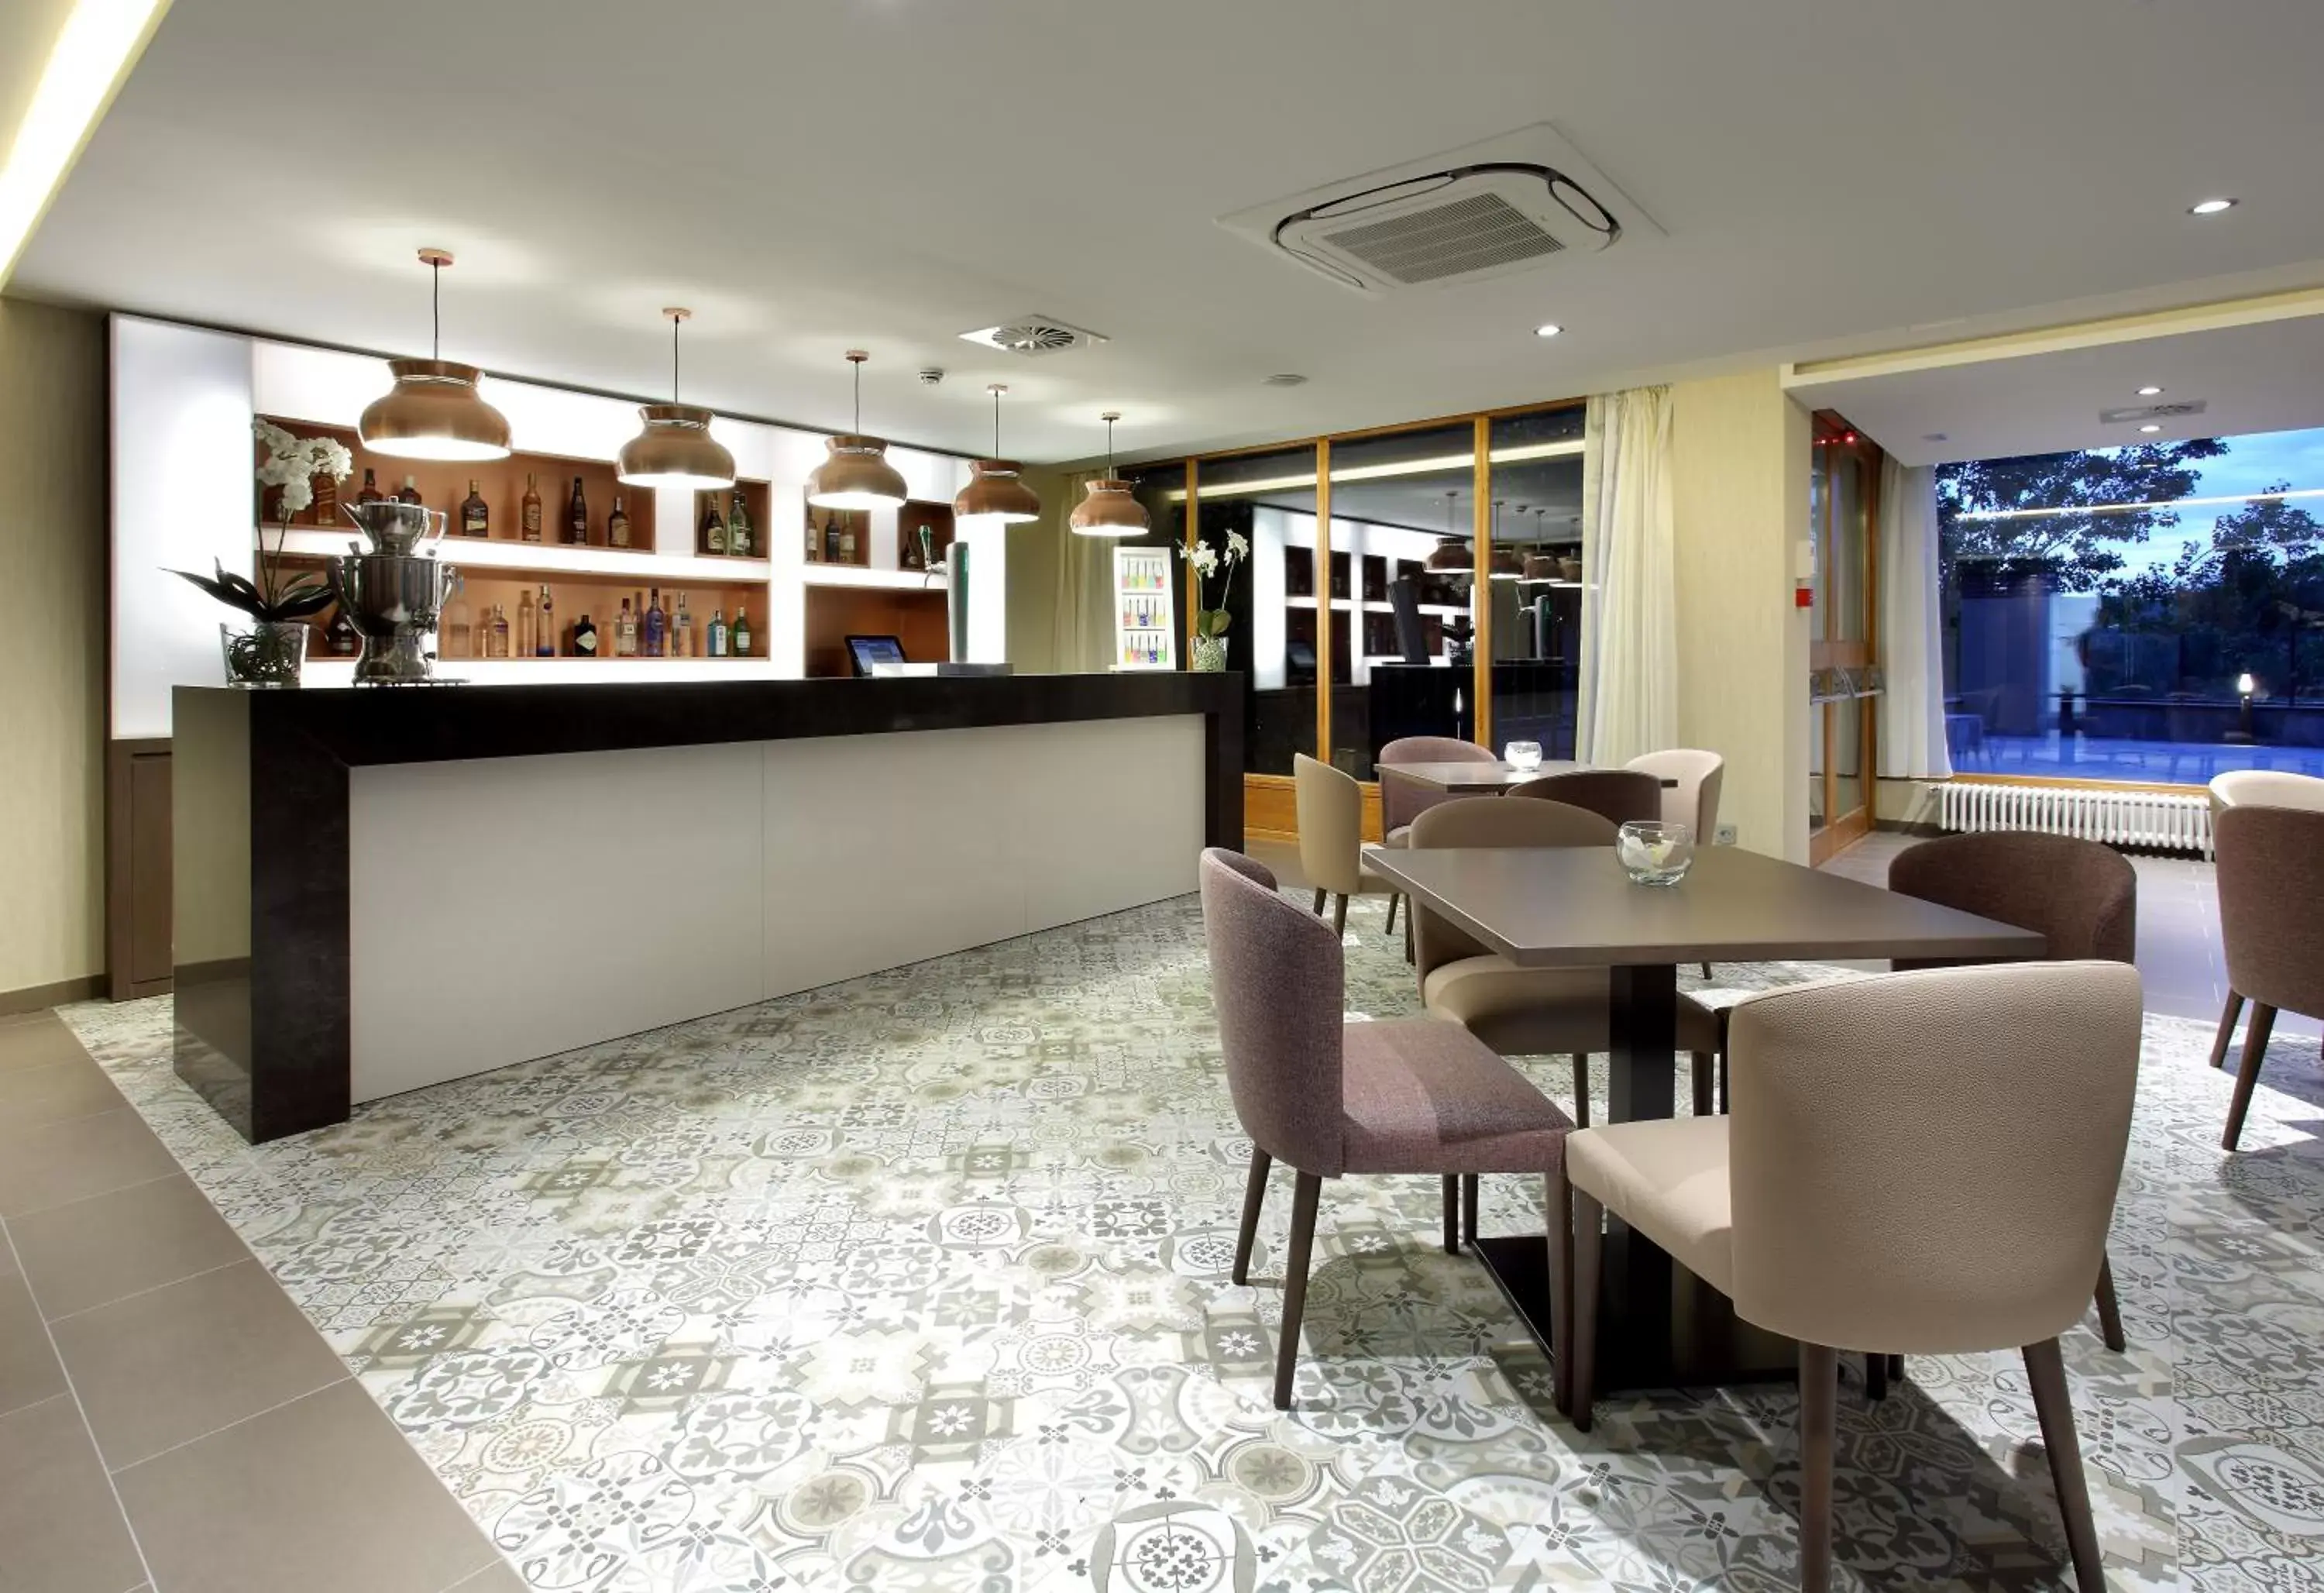 Lounge or bar, Lobby/Reception in Exe Casa de Los Linajes